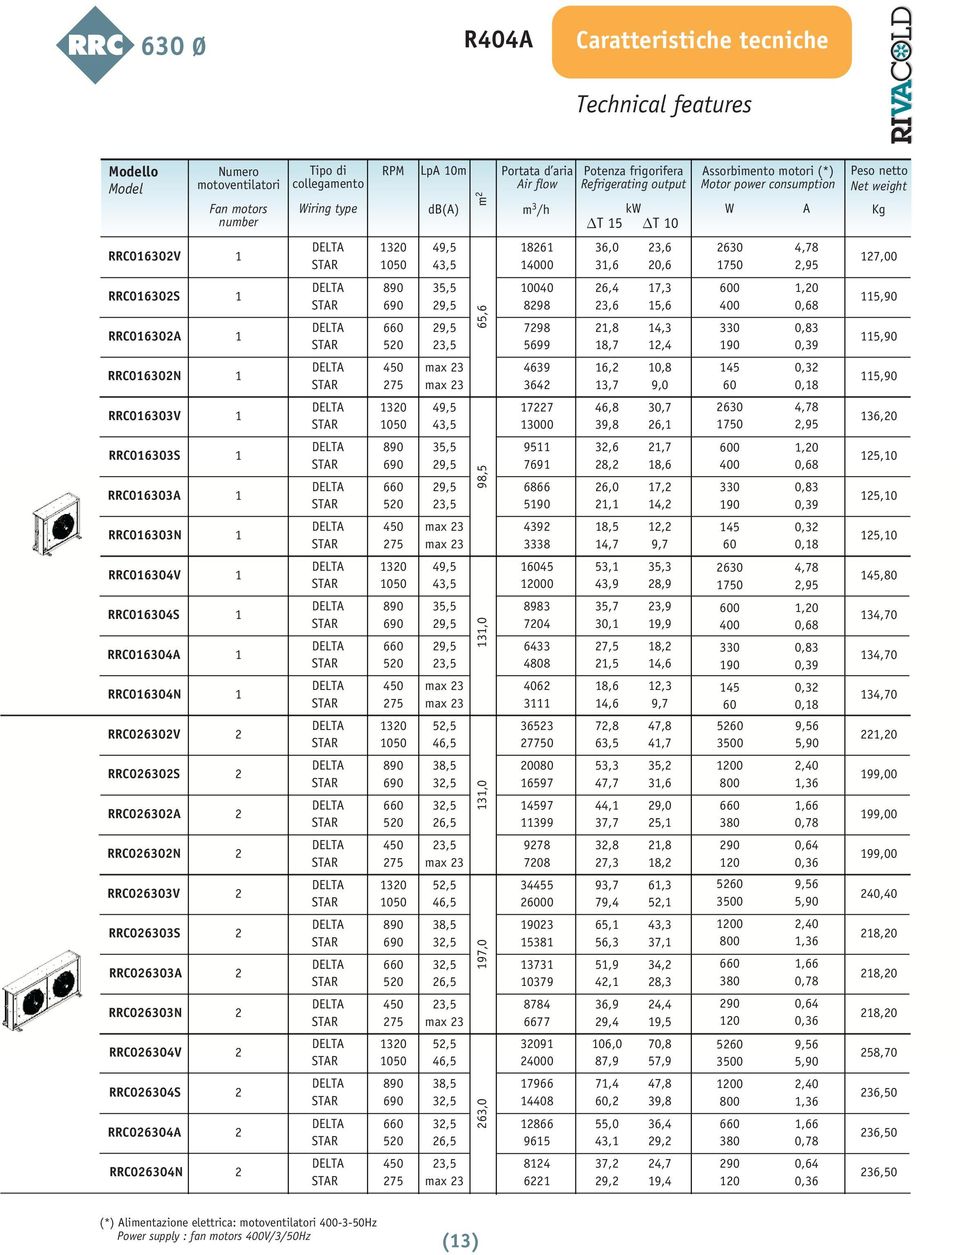 motoventilatori Fan motors number Tipo di collegamento Lp 0m Net weight Peso netto Kg d() 7,00,0 5,0 5,0 5,0 5,0,70,70,70,0 99,00 99,00 99,00 0,0,0,0 5,70,50,50,50,0 0 050 9,5,5 000,0,, 0, 0 750,7,95